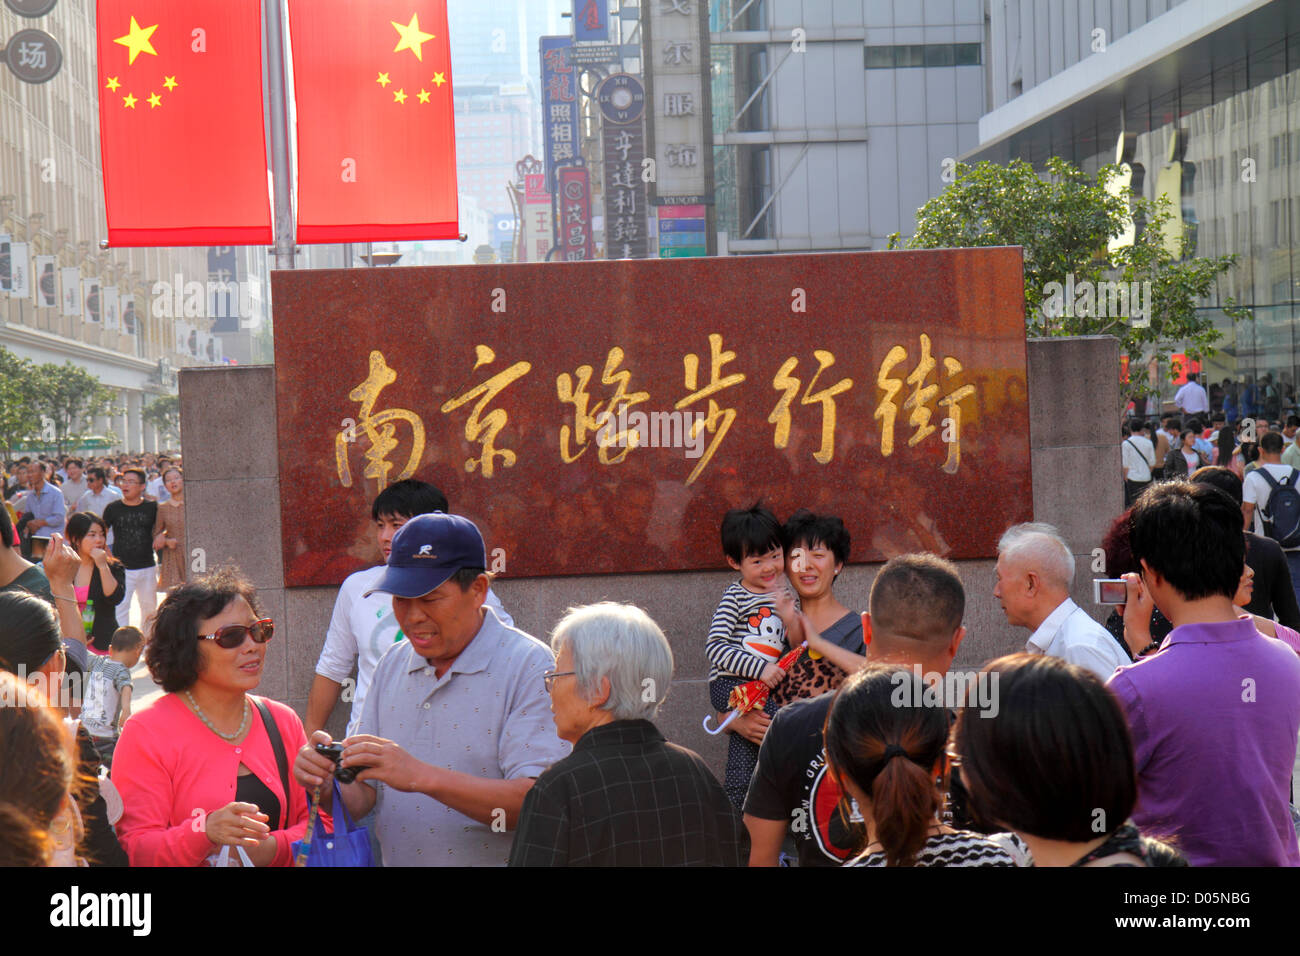 Shanghai Cina, cinese Huangpu District, East Nanjing Road, uomo asiatico uomo maschio, donna donna donne, giorno nazionale settimana d'oro, mandarino, hanzi, personaggi, sym Foto Stock